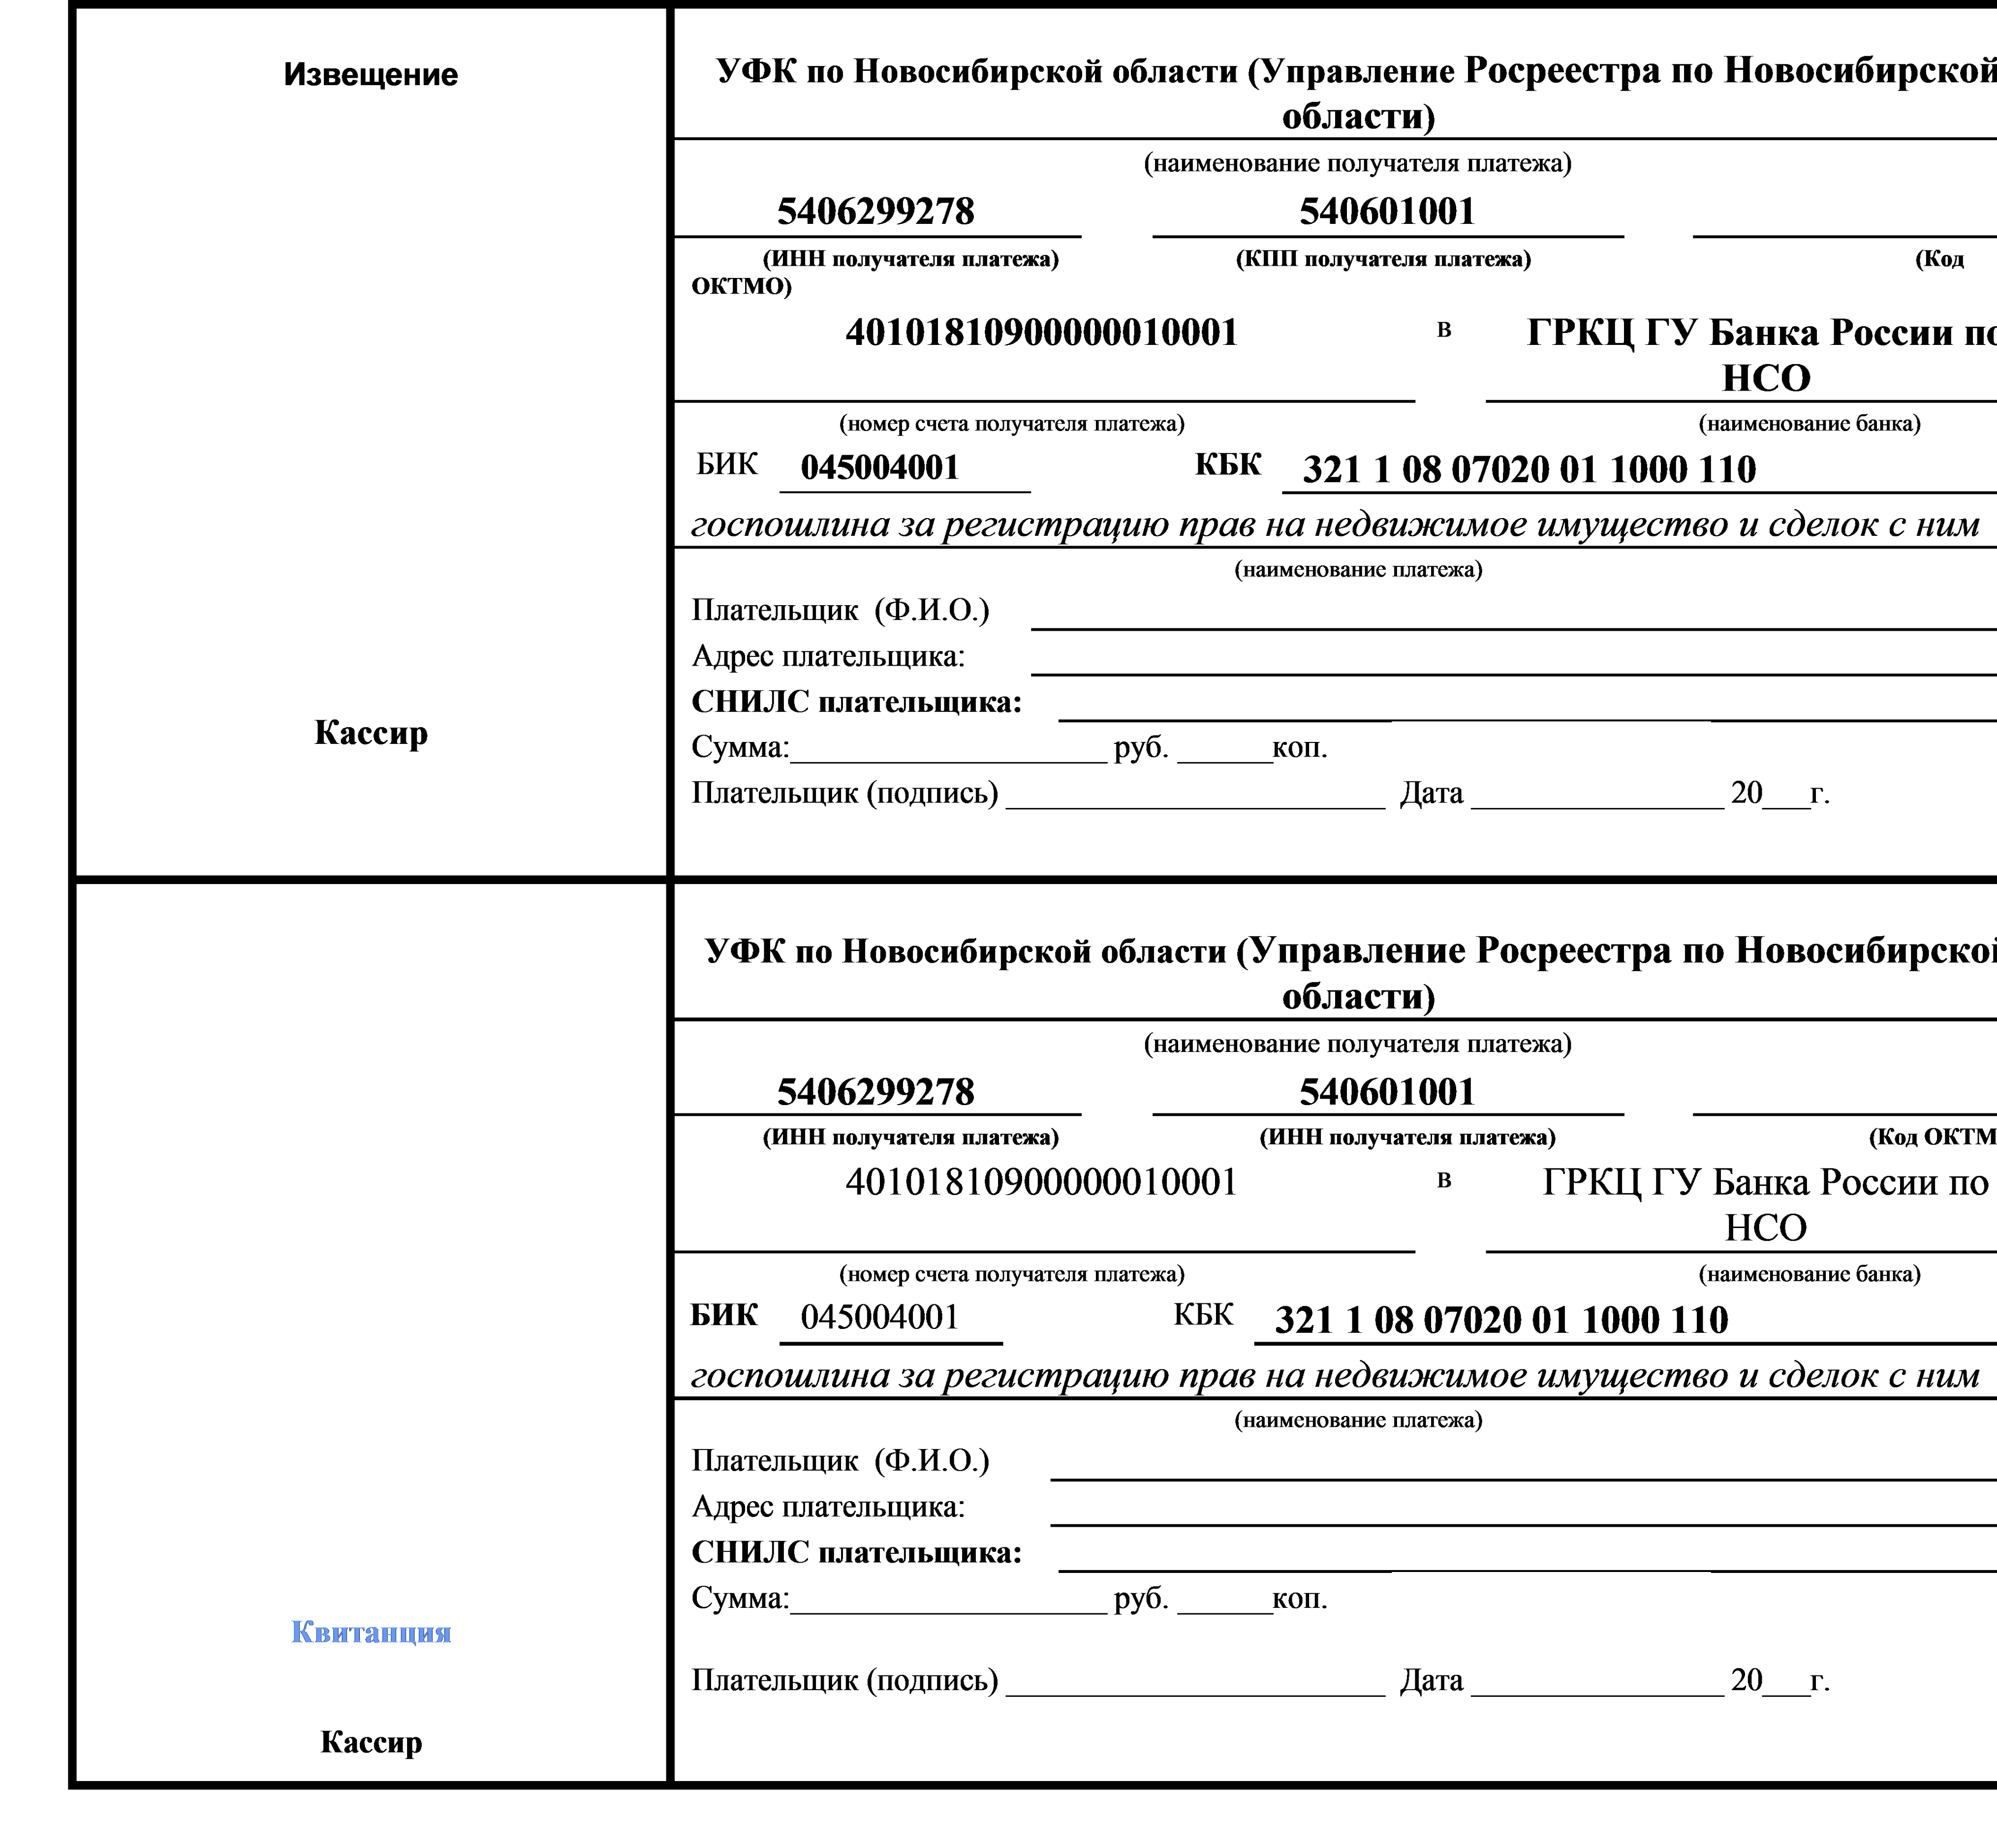 Письмо департамента налоговой политики минфина россии от 6 октября 2020 г. n 03-05-04-03/87113 об уплате государственной пошлины за государственную регистрацию дополнительных соглашений к договорам аренды недвижимого имущества